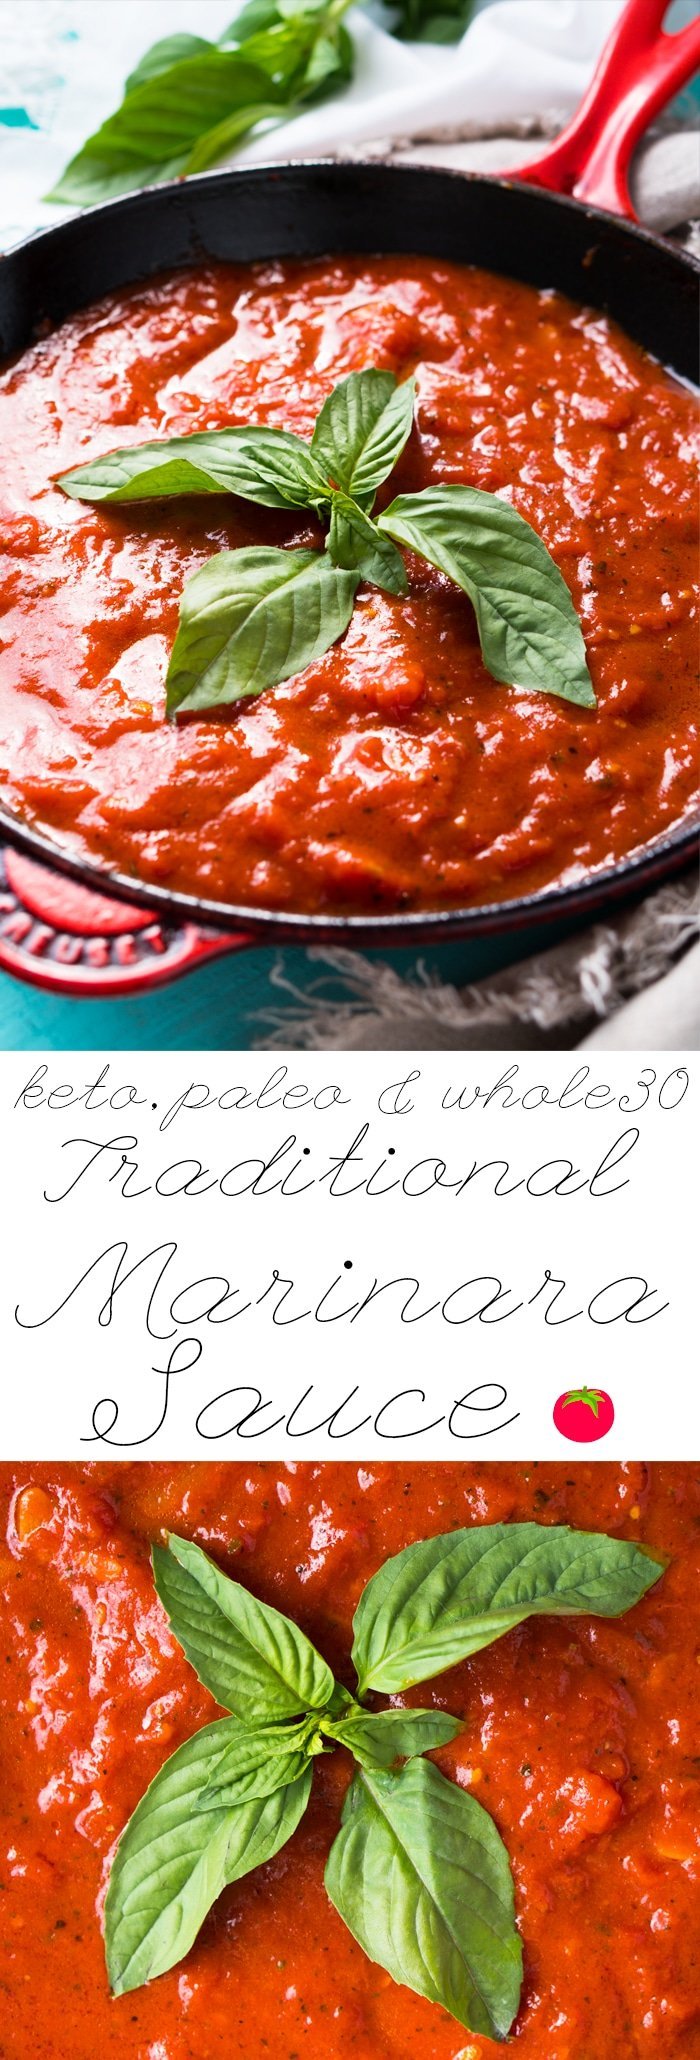 Paleo, Whole30 & Keto Marinara Sauce 🍅 #ketomarinara #marinarasauce #whole30